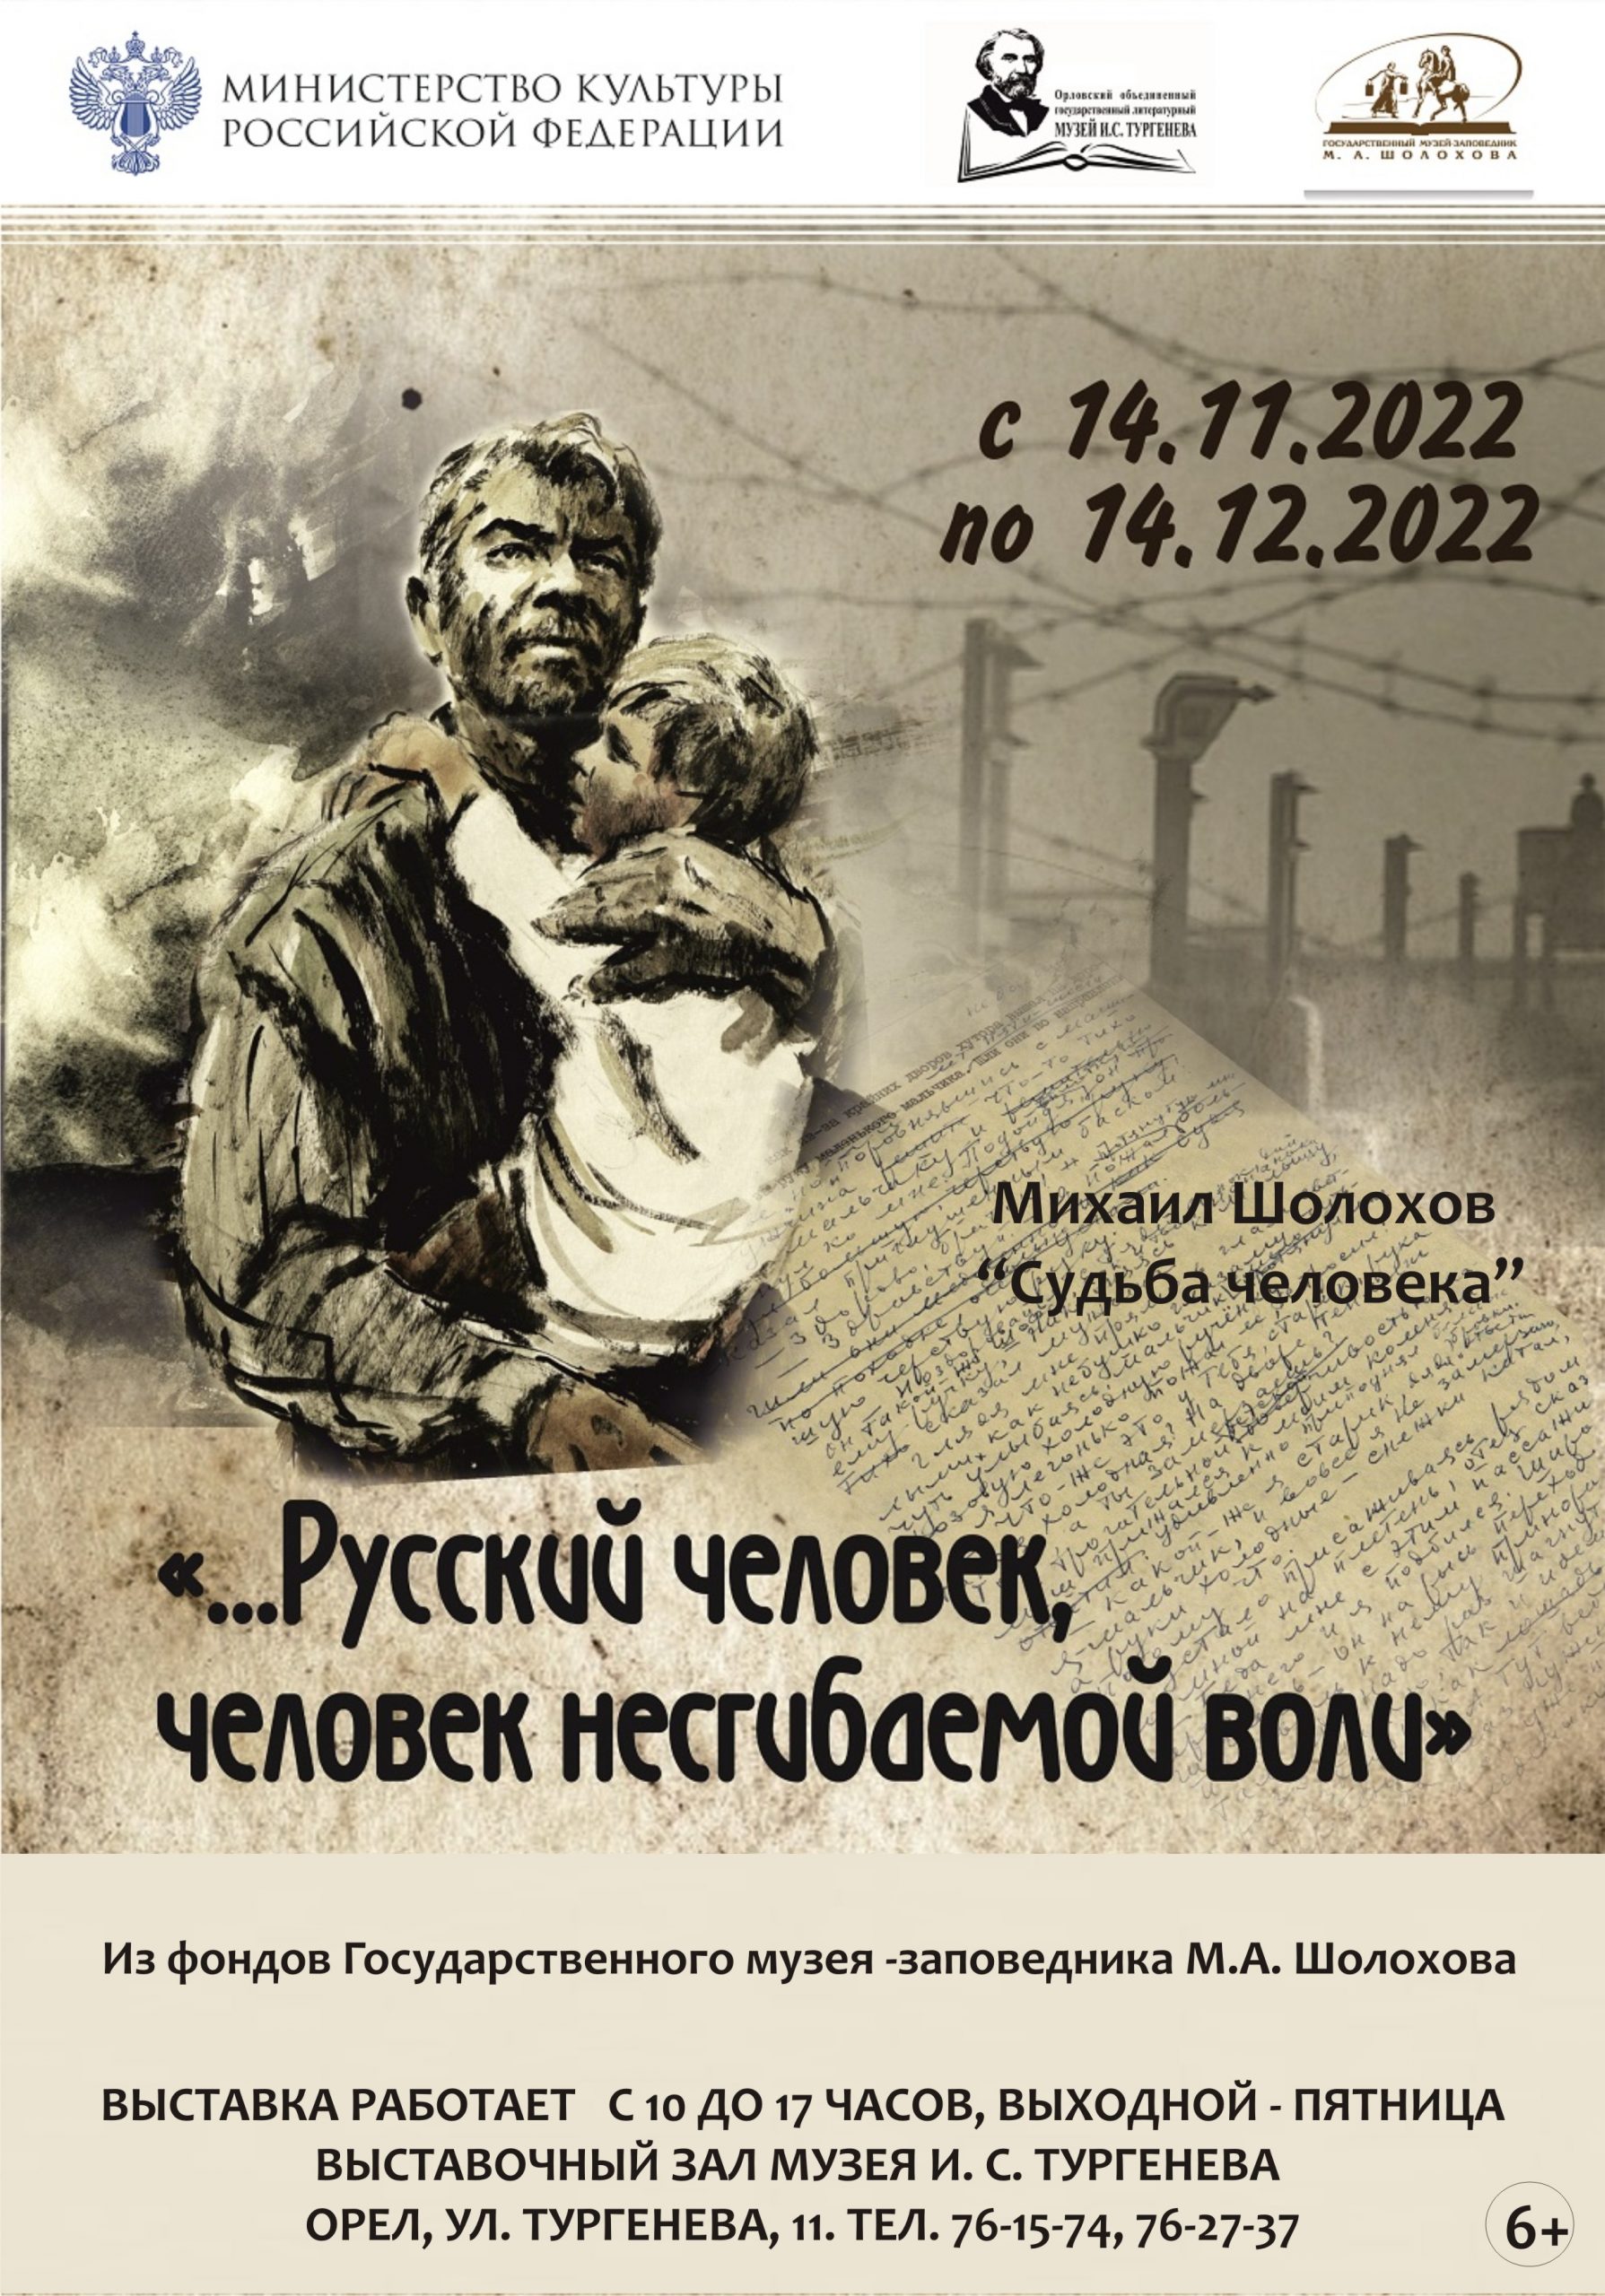 Пост-релиз на открытие выставки «...Русский человек, человек несгибаемой воли... М.А. Шолохов. "Судьба человека"»